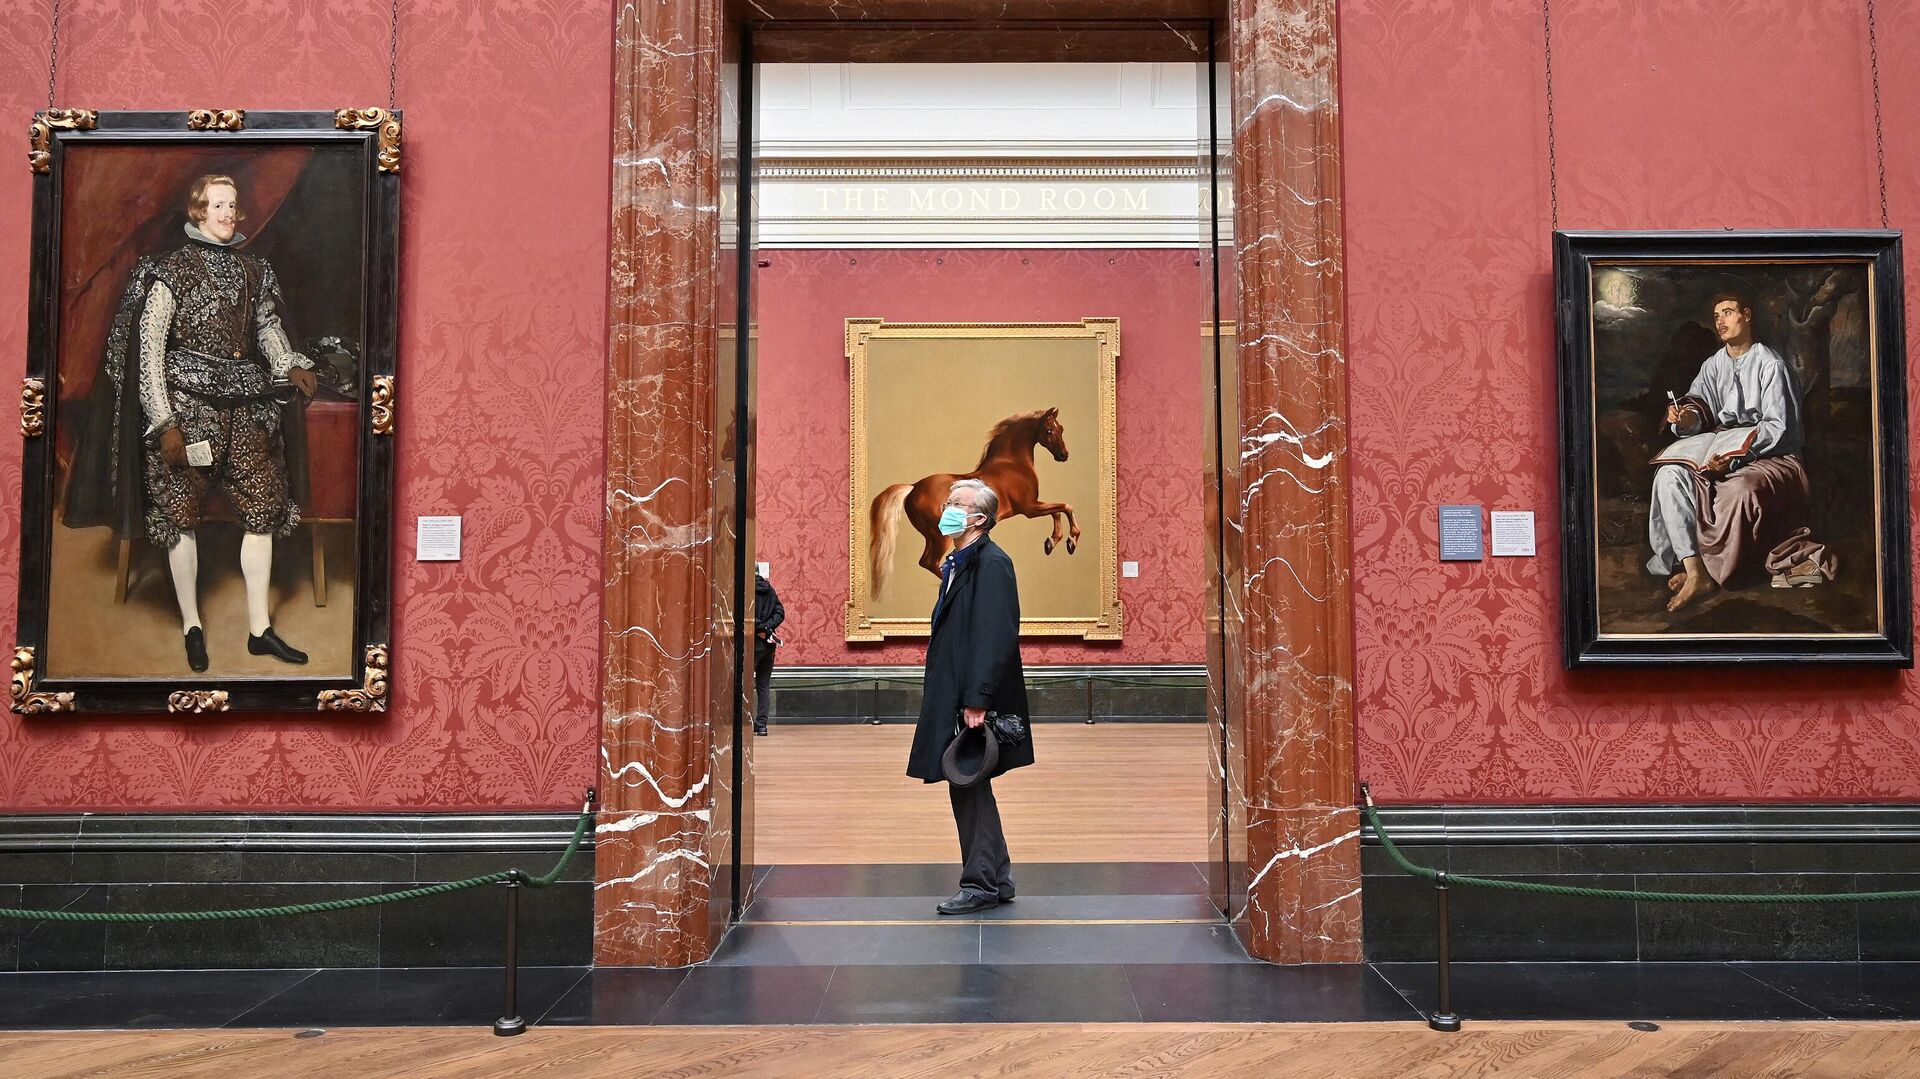 Посетитель смотрит на произведения искусства в Национальной галереи в Лондоне, фото из архива - Sputnik Азербайджан, 1920, 04.10.2021